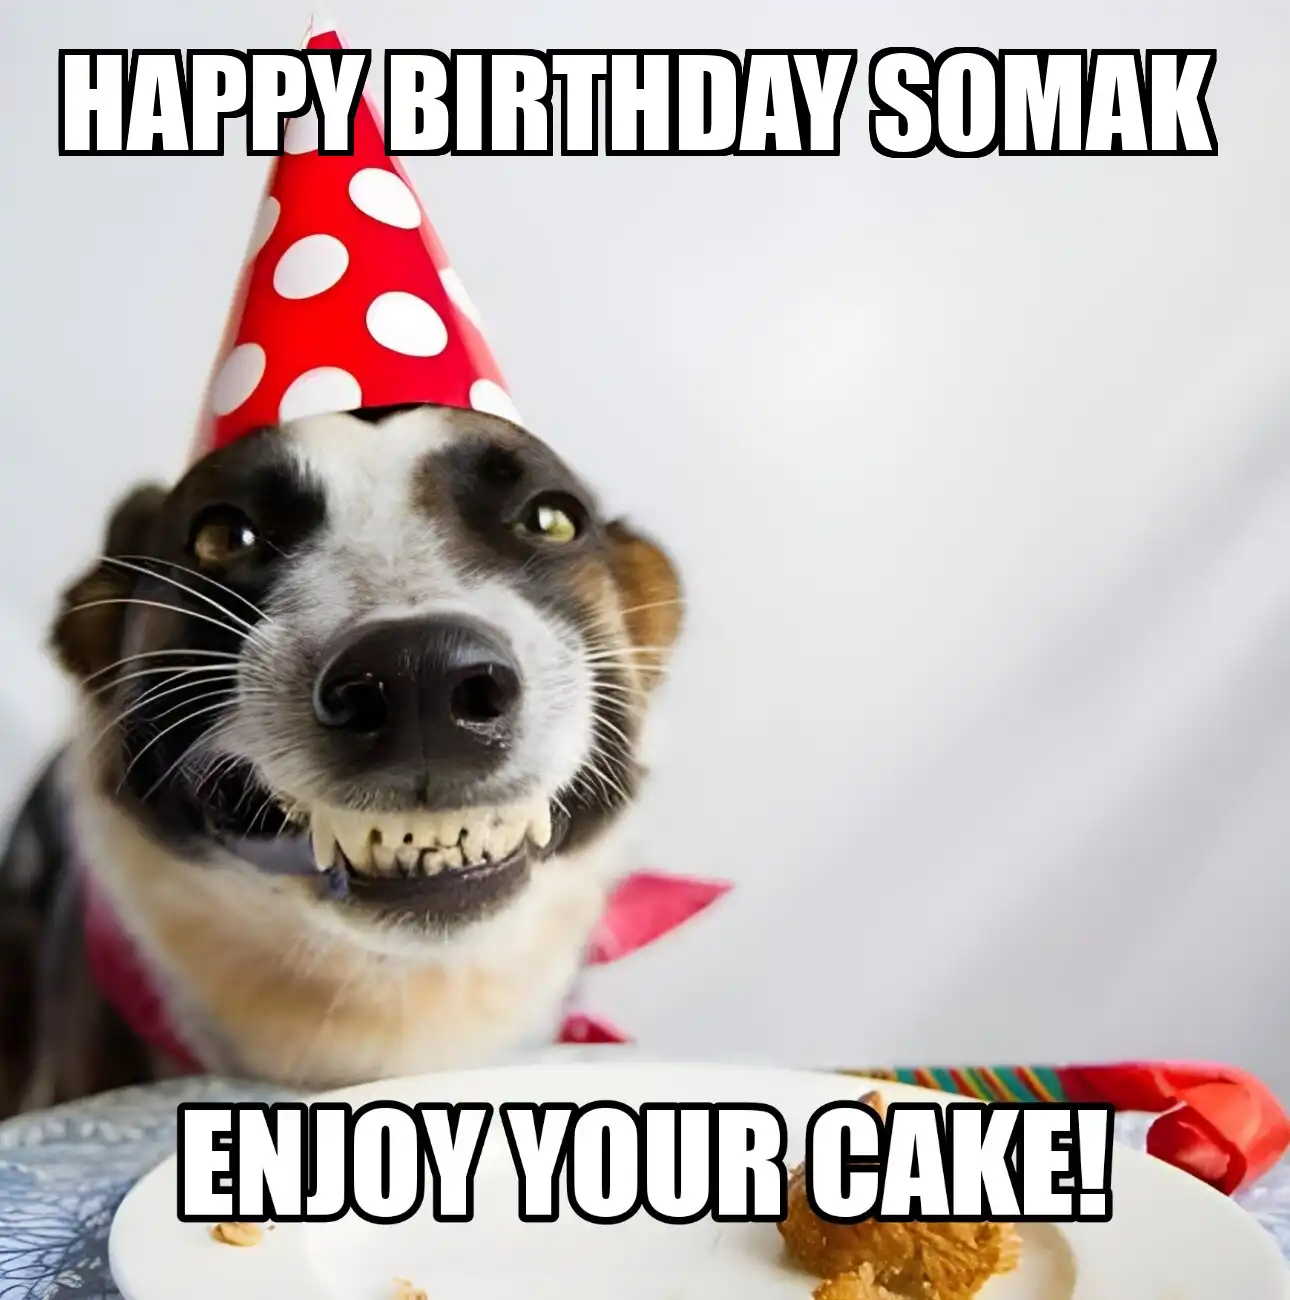 Happy Birthday Somak Enjoy Your Cake Dog Meme